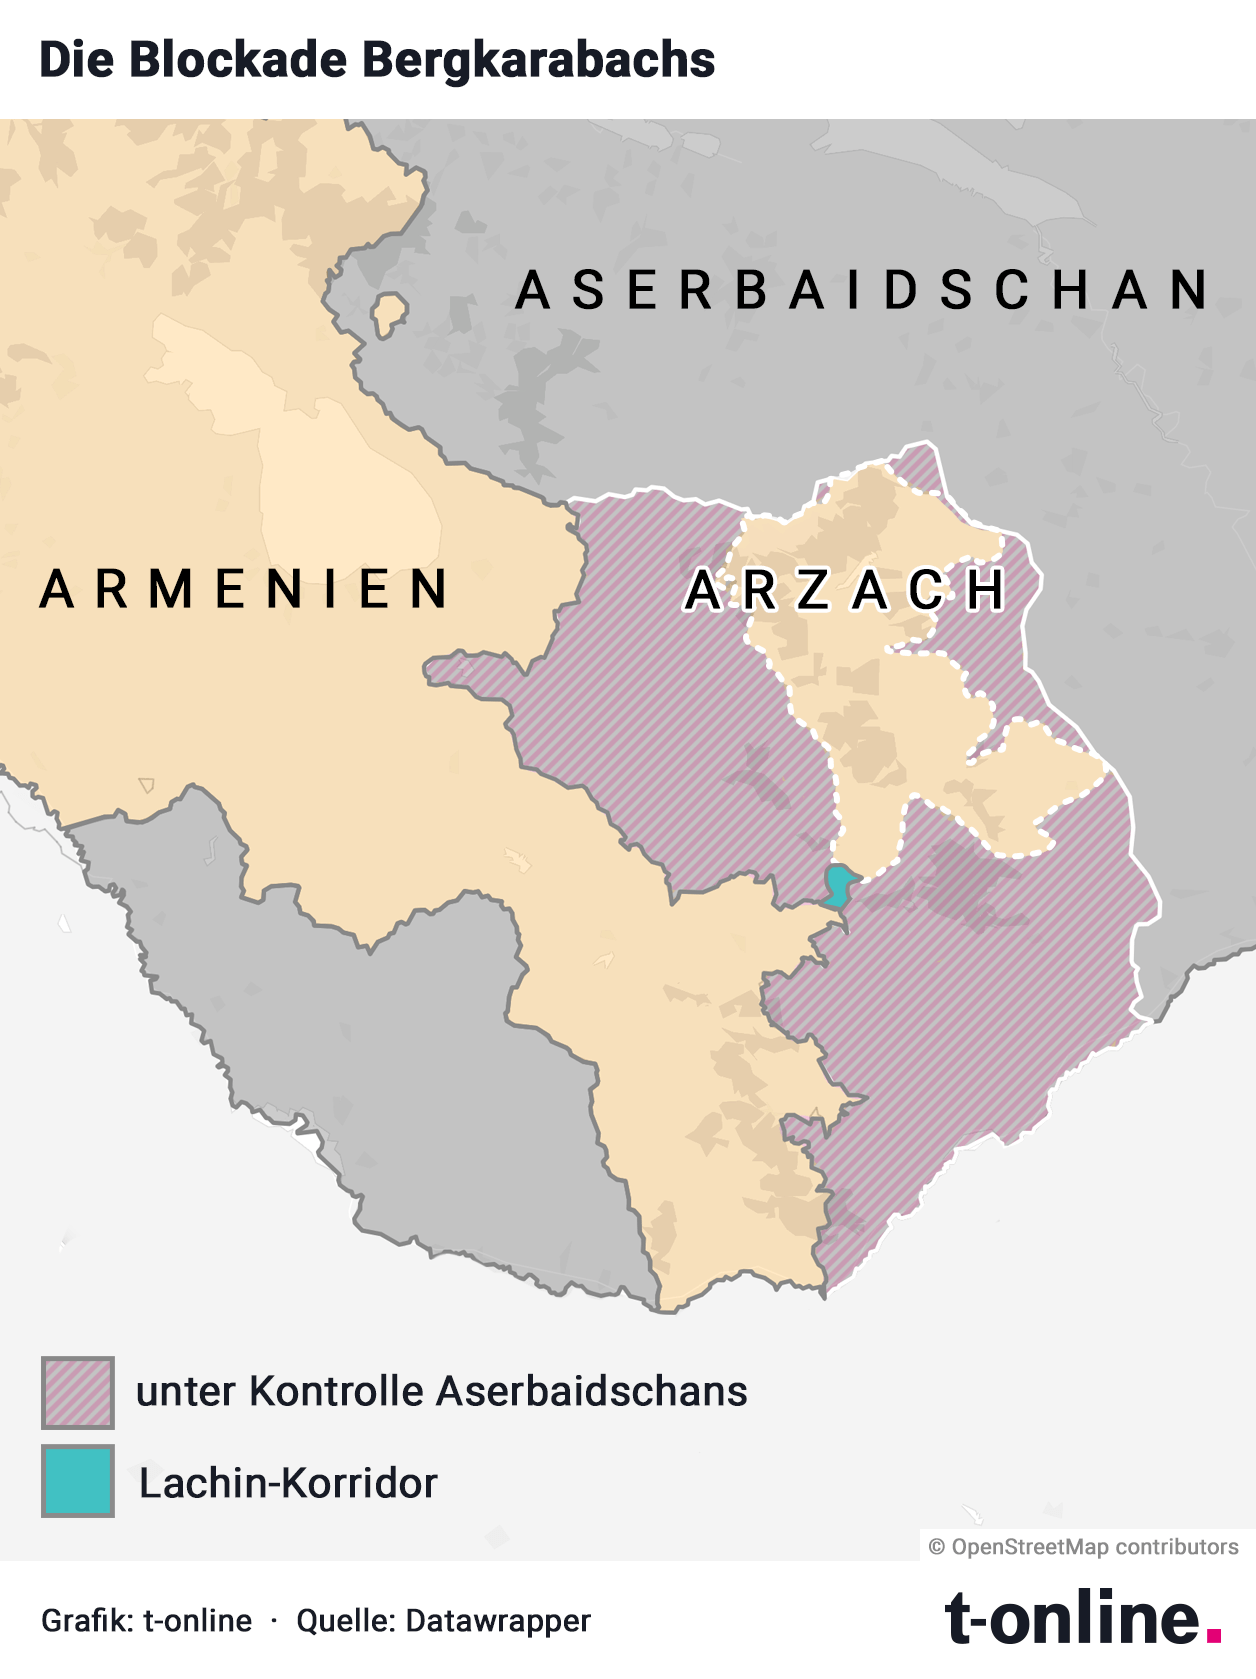 Der schmale Korridor, der Armenien und Arzach verbindet, wird von Aserbaidschan blockiert.